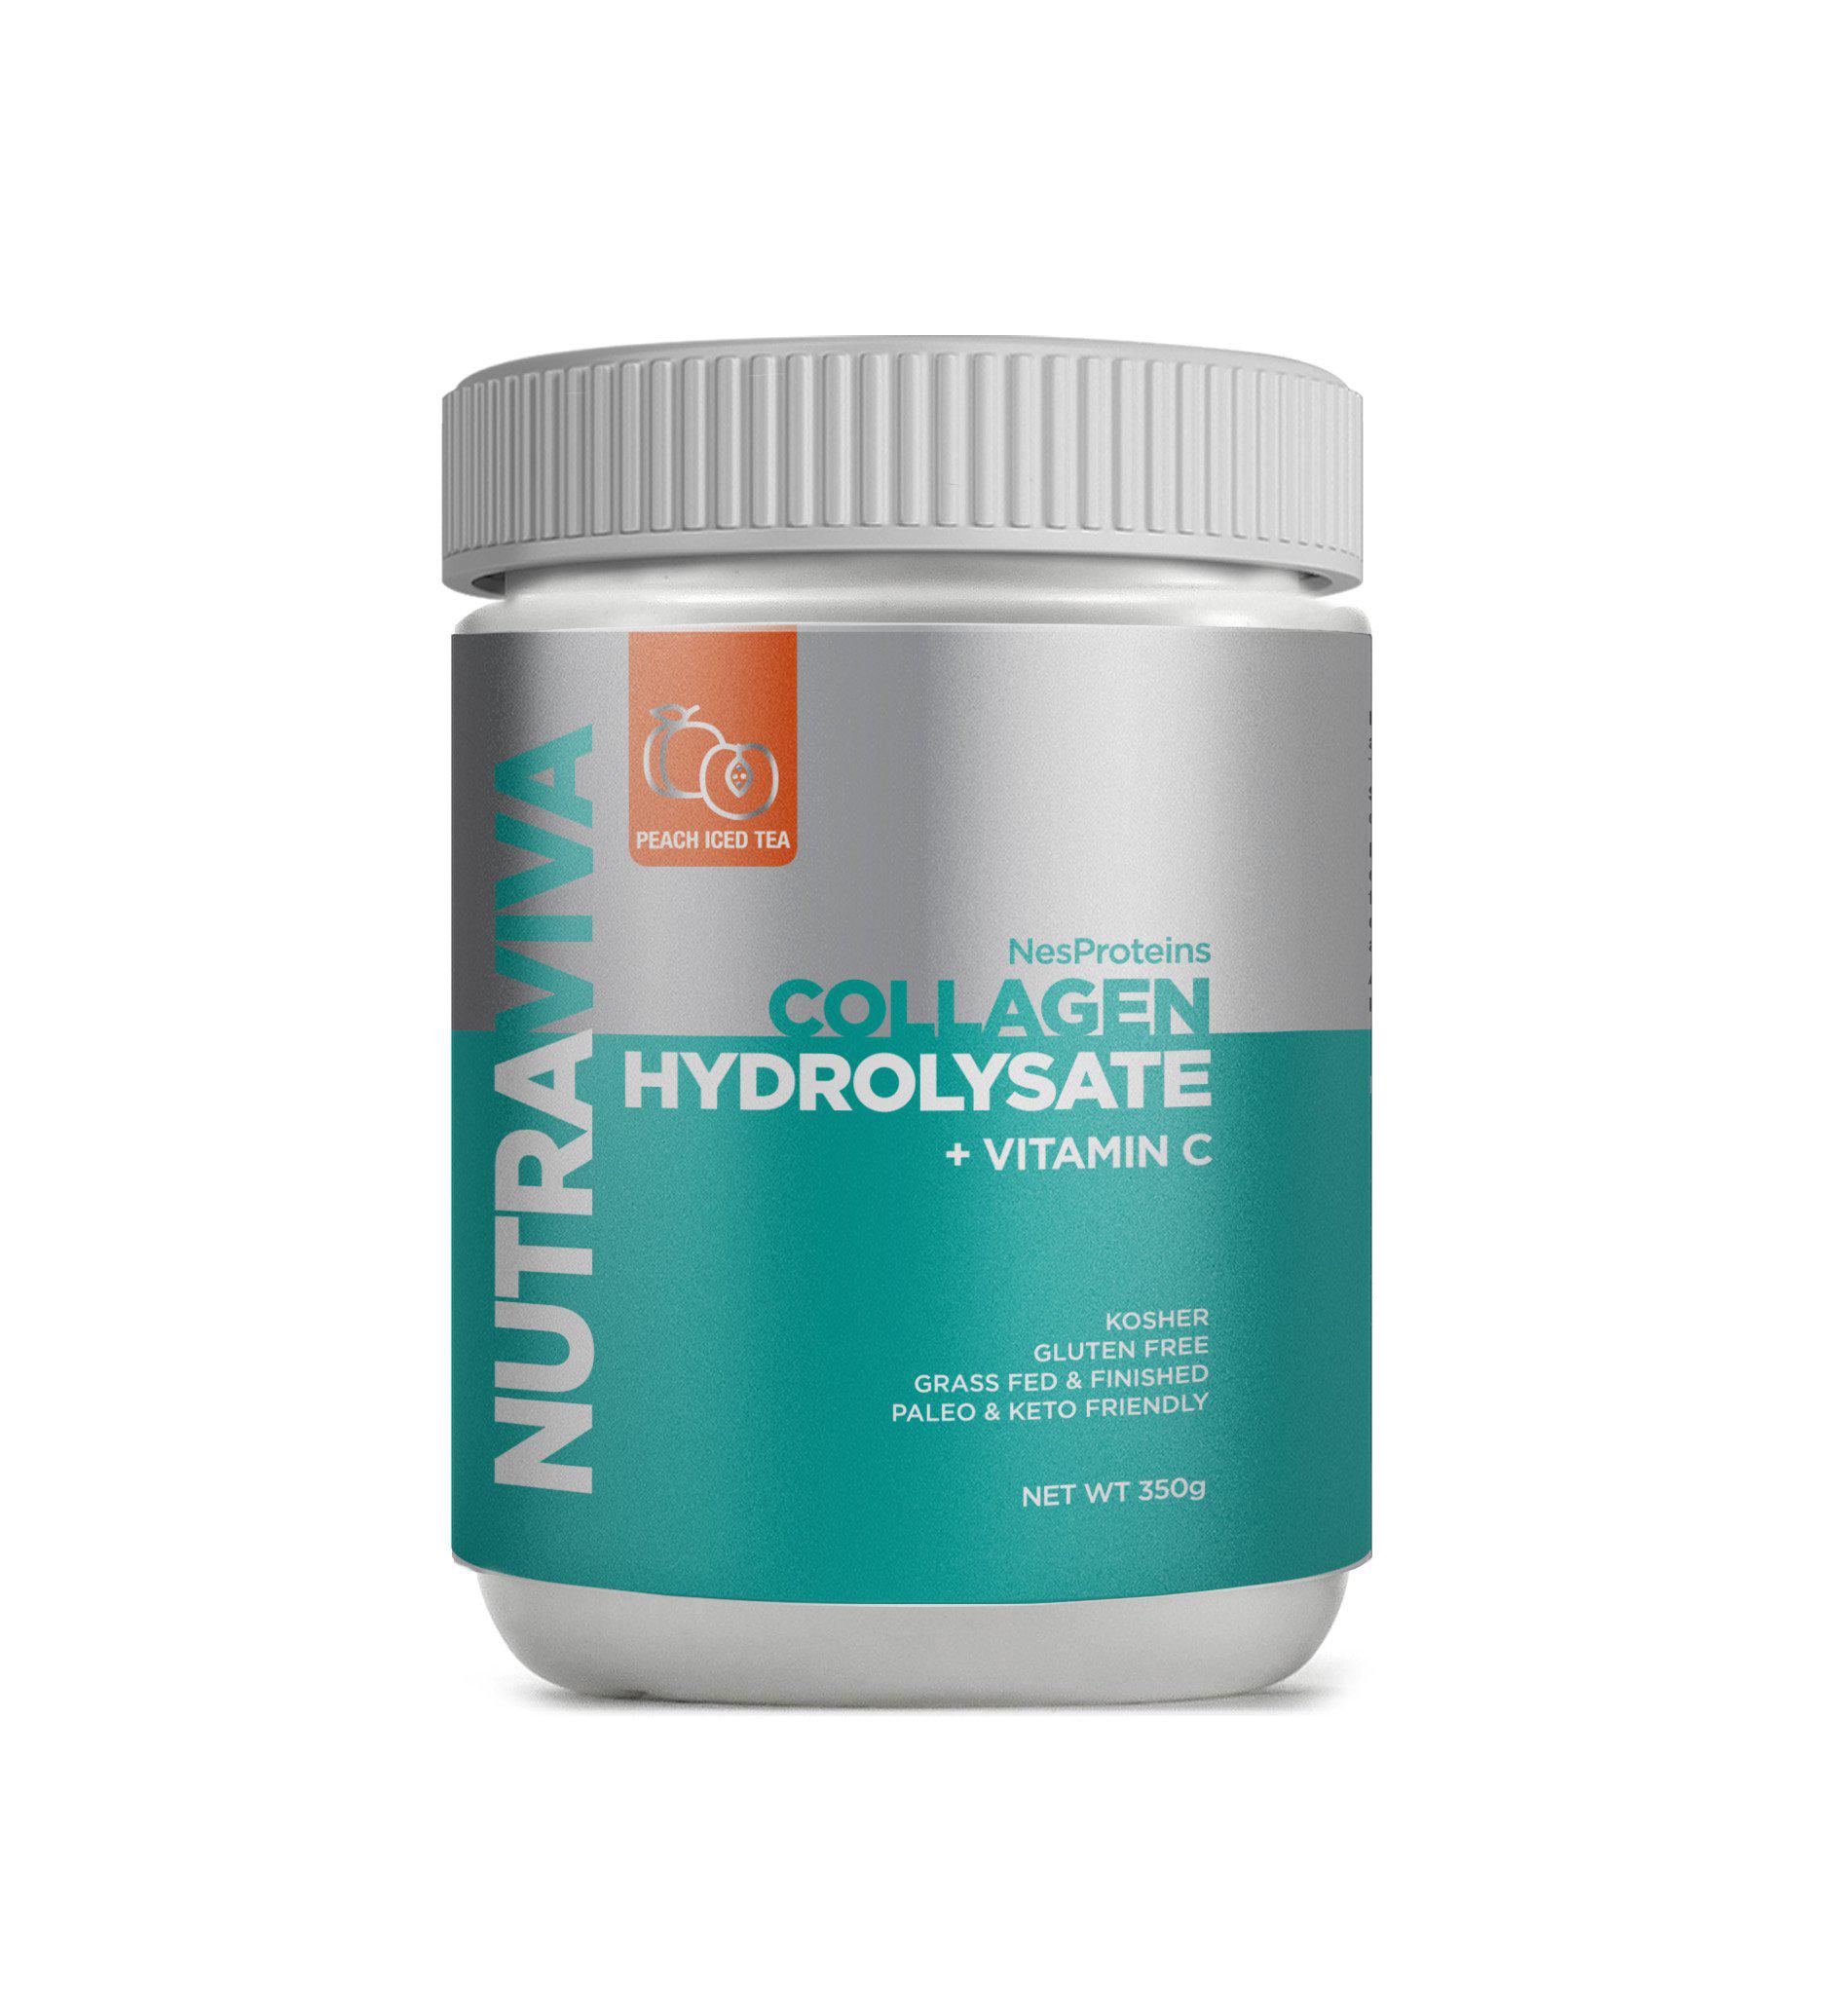 nutraviva nesproteins collagen hydrolysate + vitamin c  350g peach iced tea